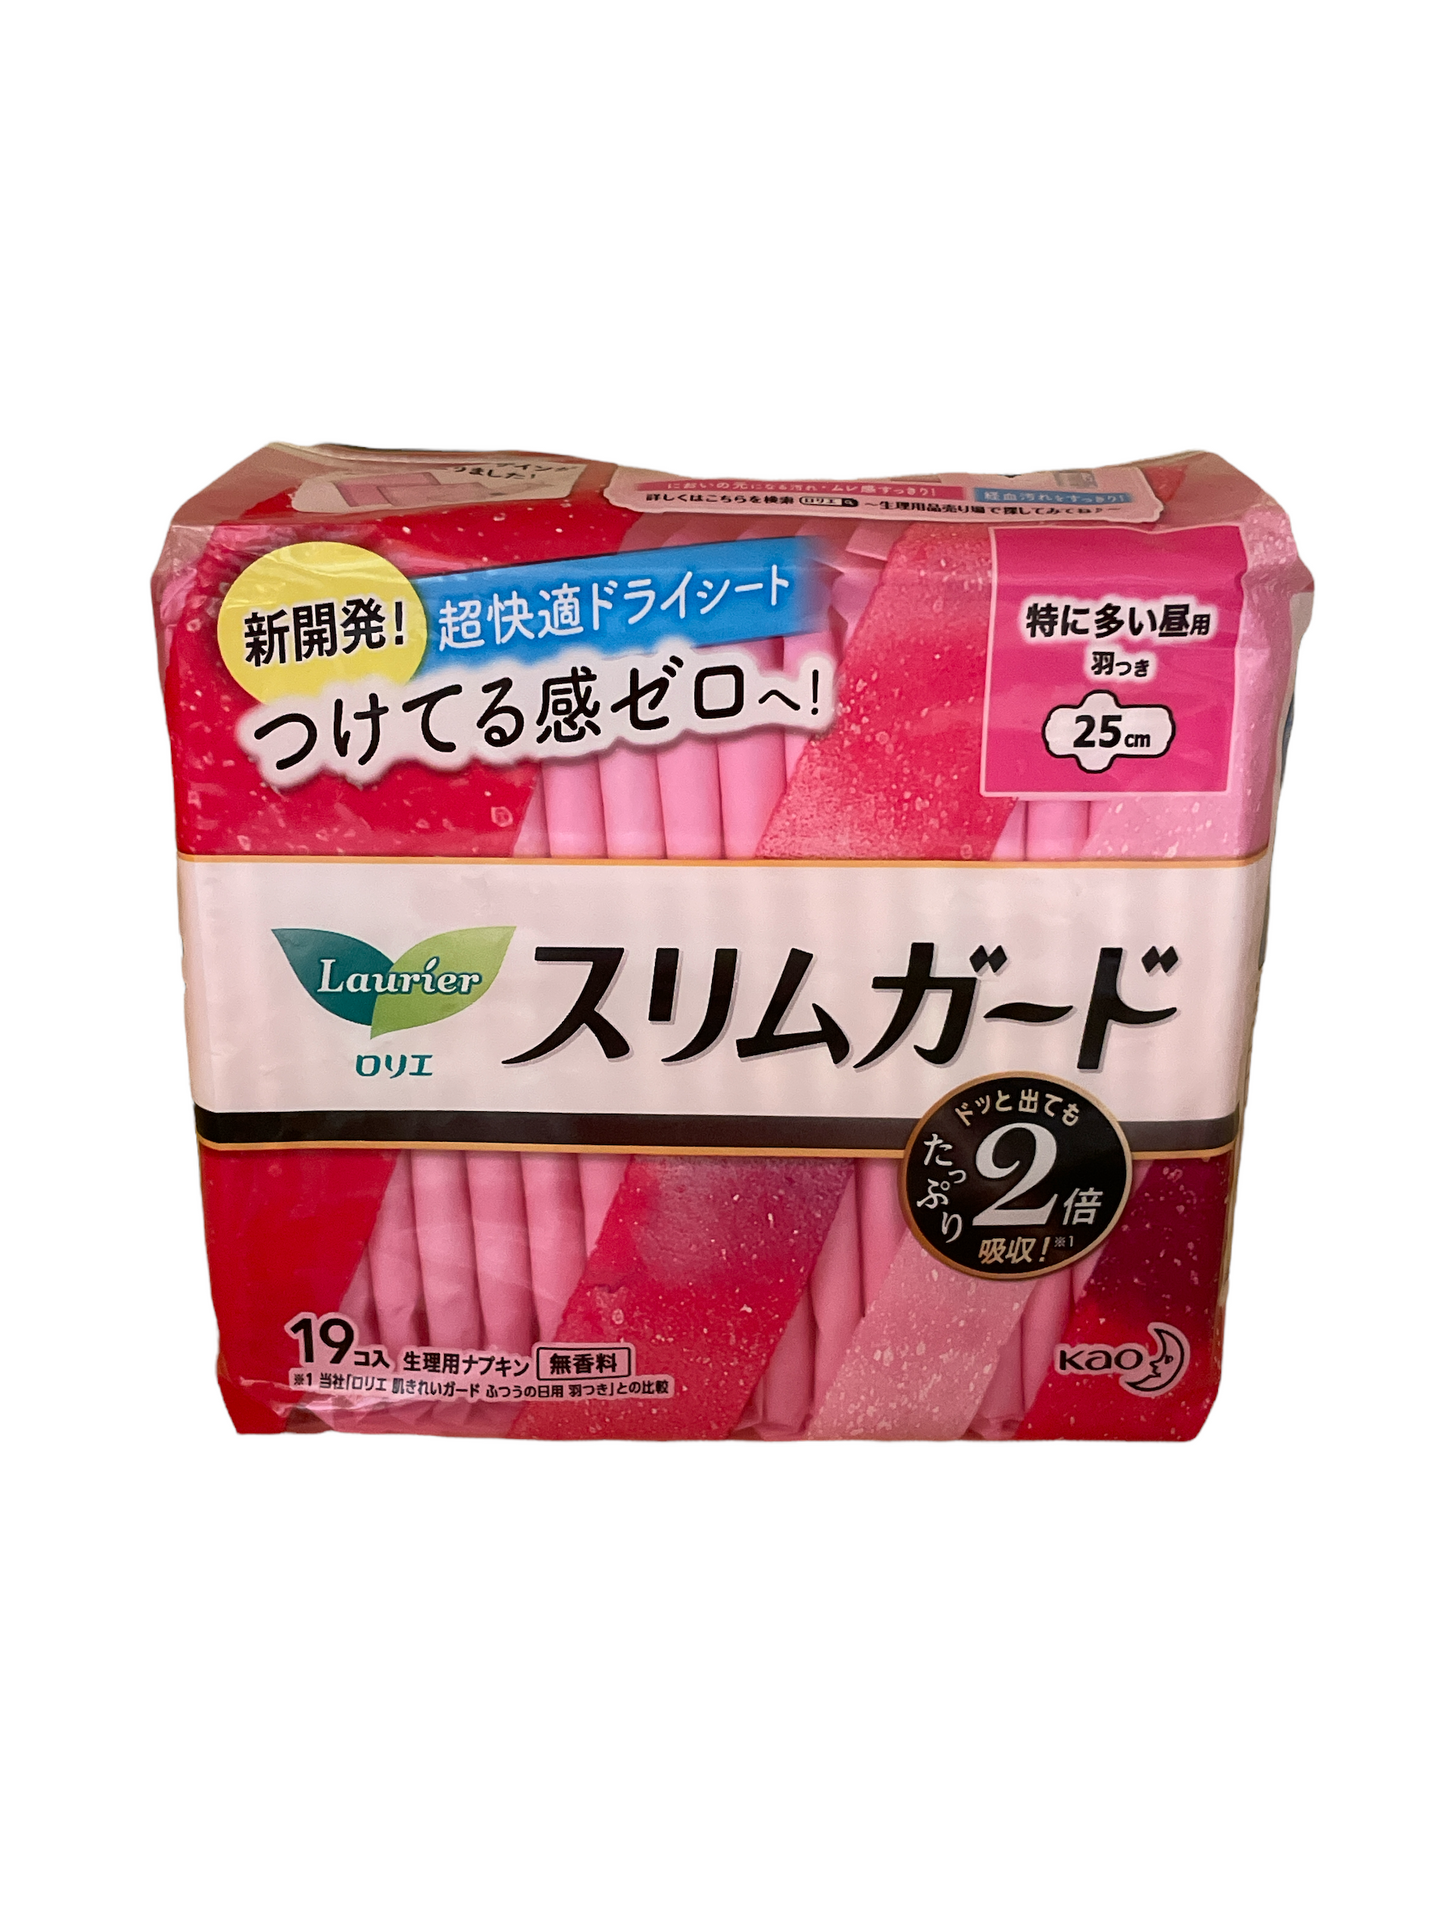 Japan Sanitary Towel 25cm-19pcs 日本衛生巾